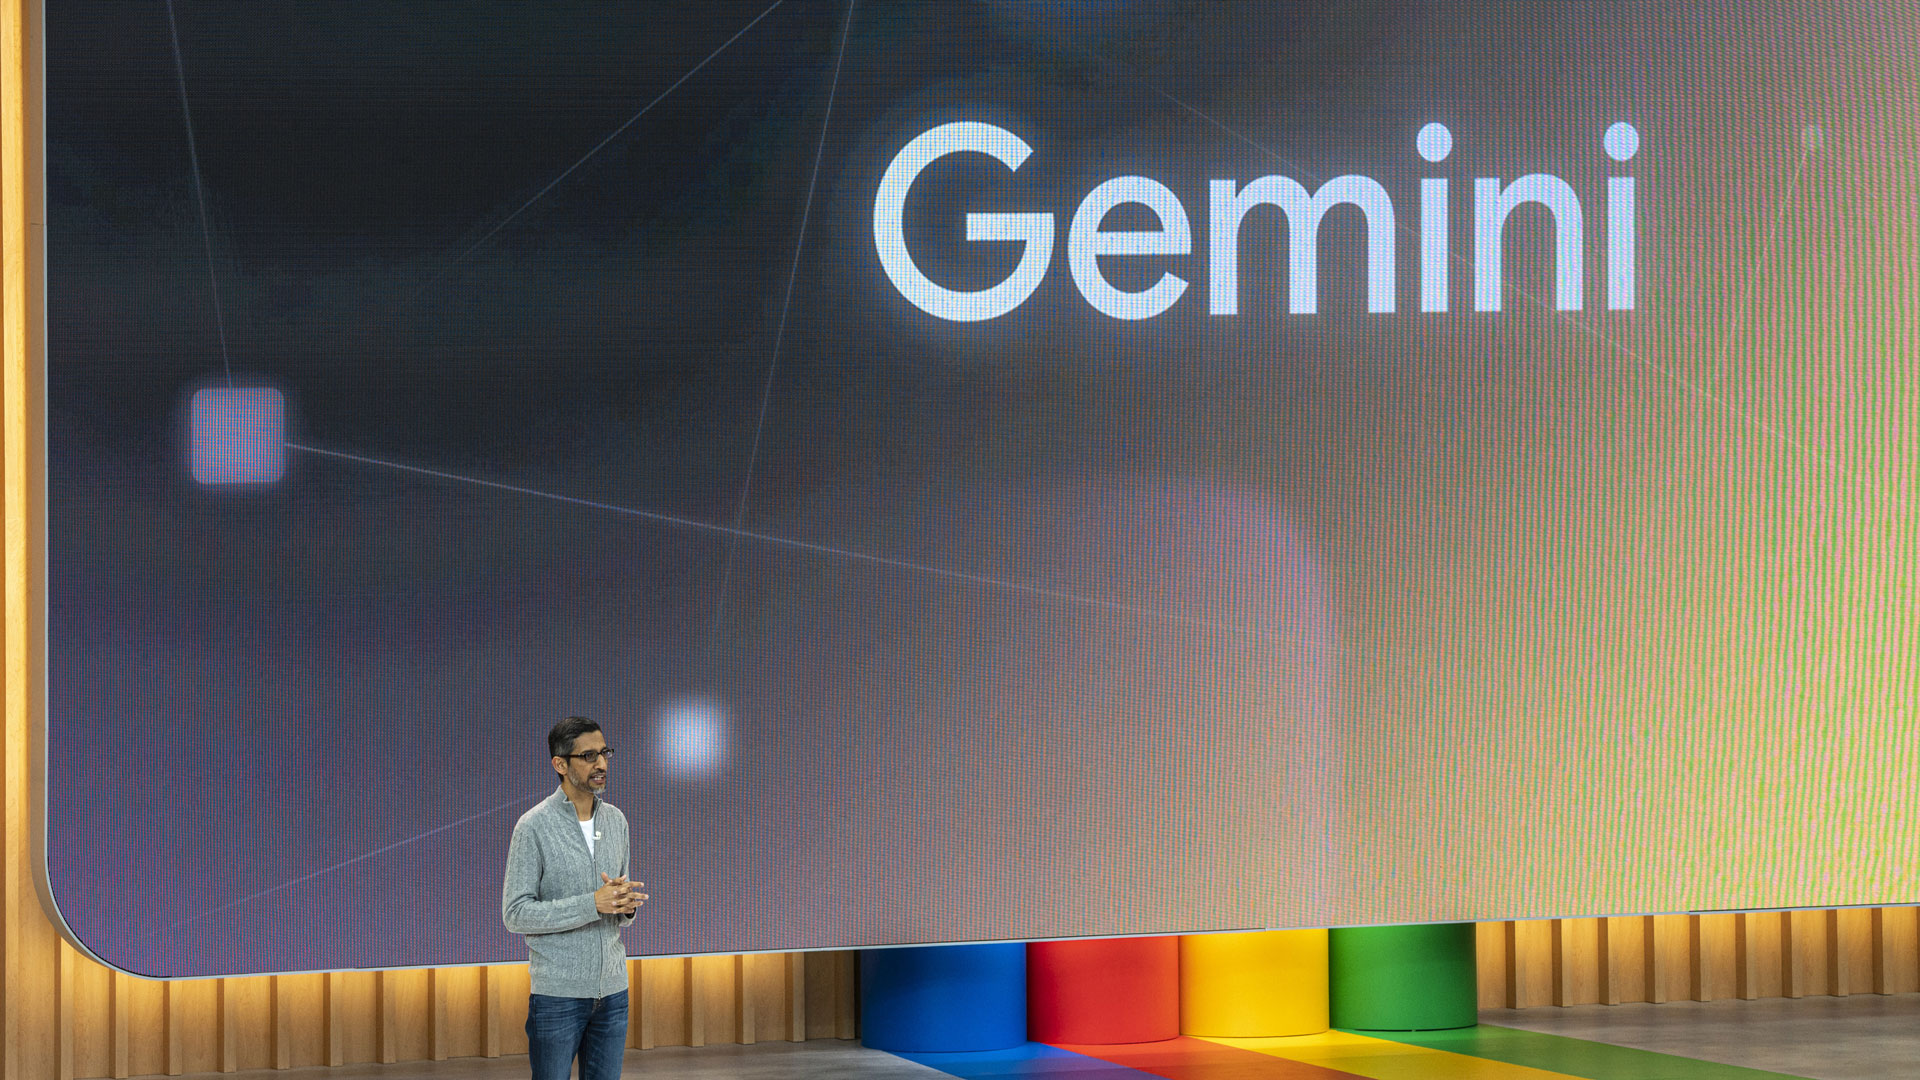 Google предоставляет адресной строке Chrome новый ярлык, который позволяет легко общаться с его чат-ботом с искусственным интеллектом Gemini.